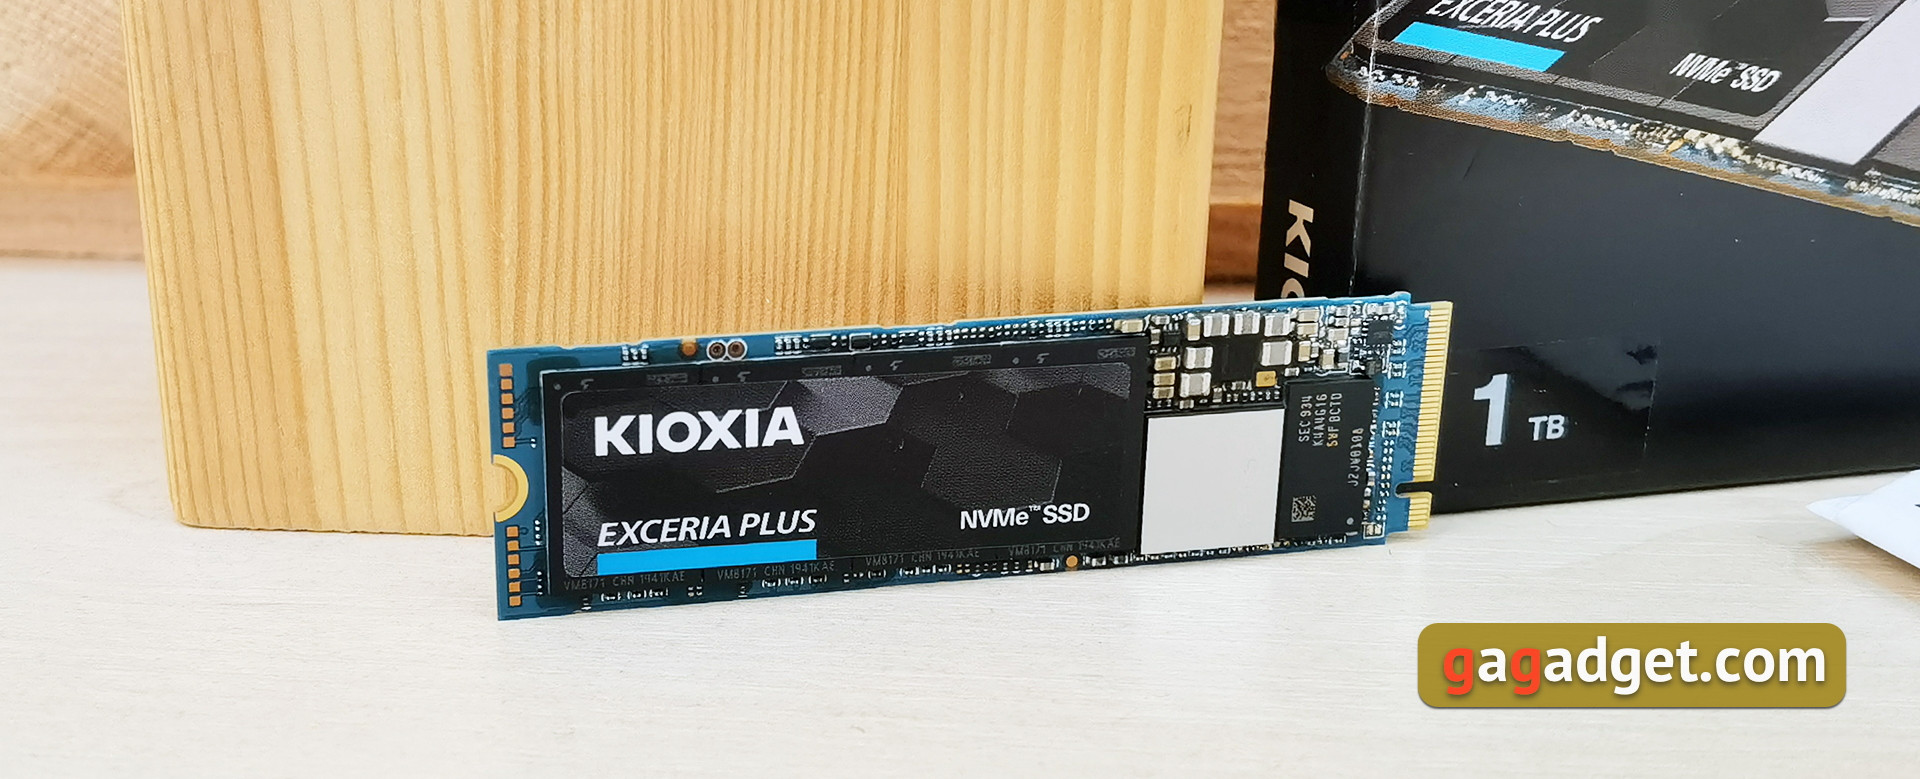 Kioxia Exceria Plus 1TB Testbericht: Schnelle PCIe 3.0 x4, NVMe SSD für Gaming und Arbeitsaufgaben